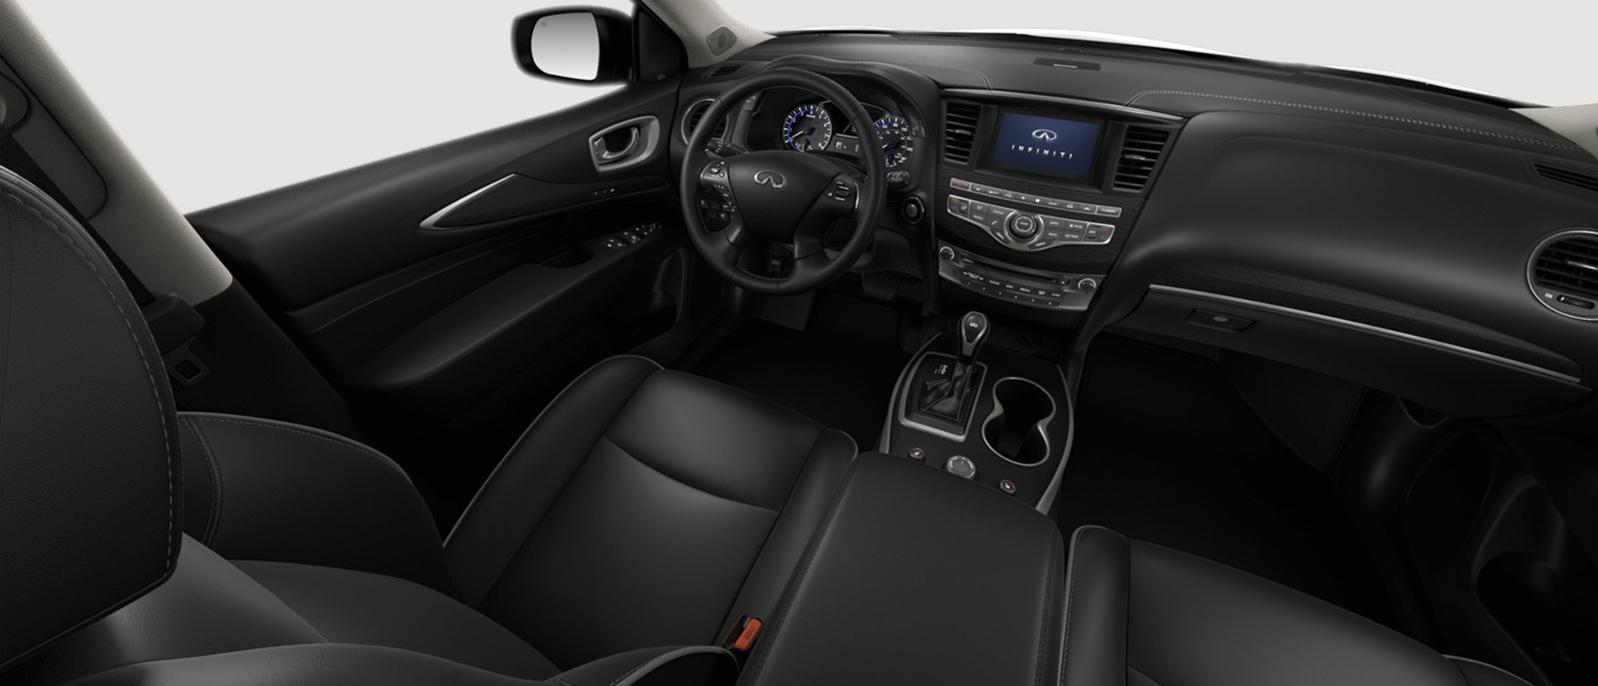 INFINITI QX60 Luxe trim interior in Graphite color scheme.